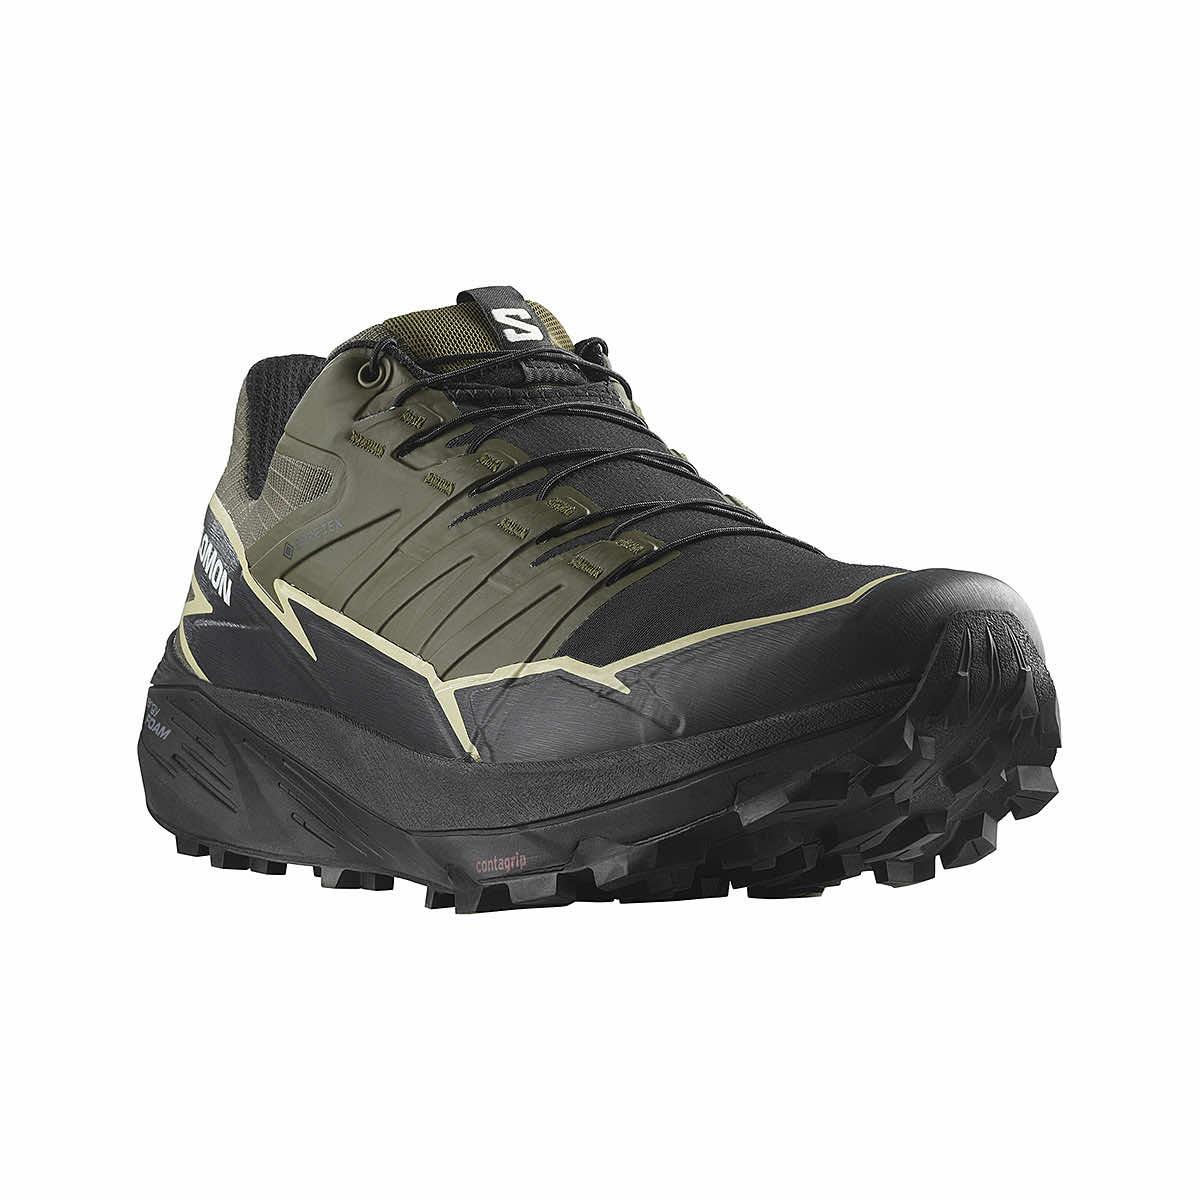 Thundercross - Men's Trail Running Shoes